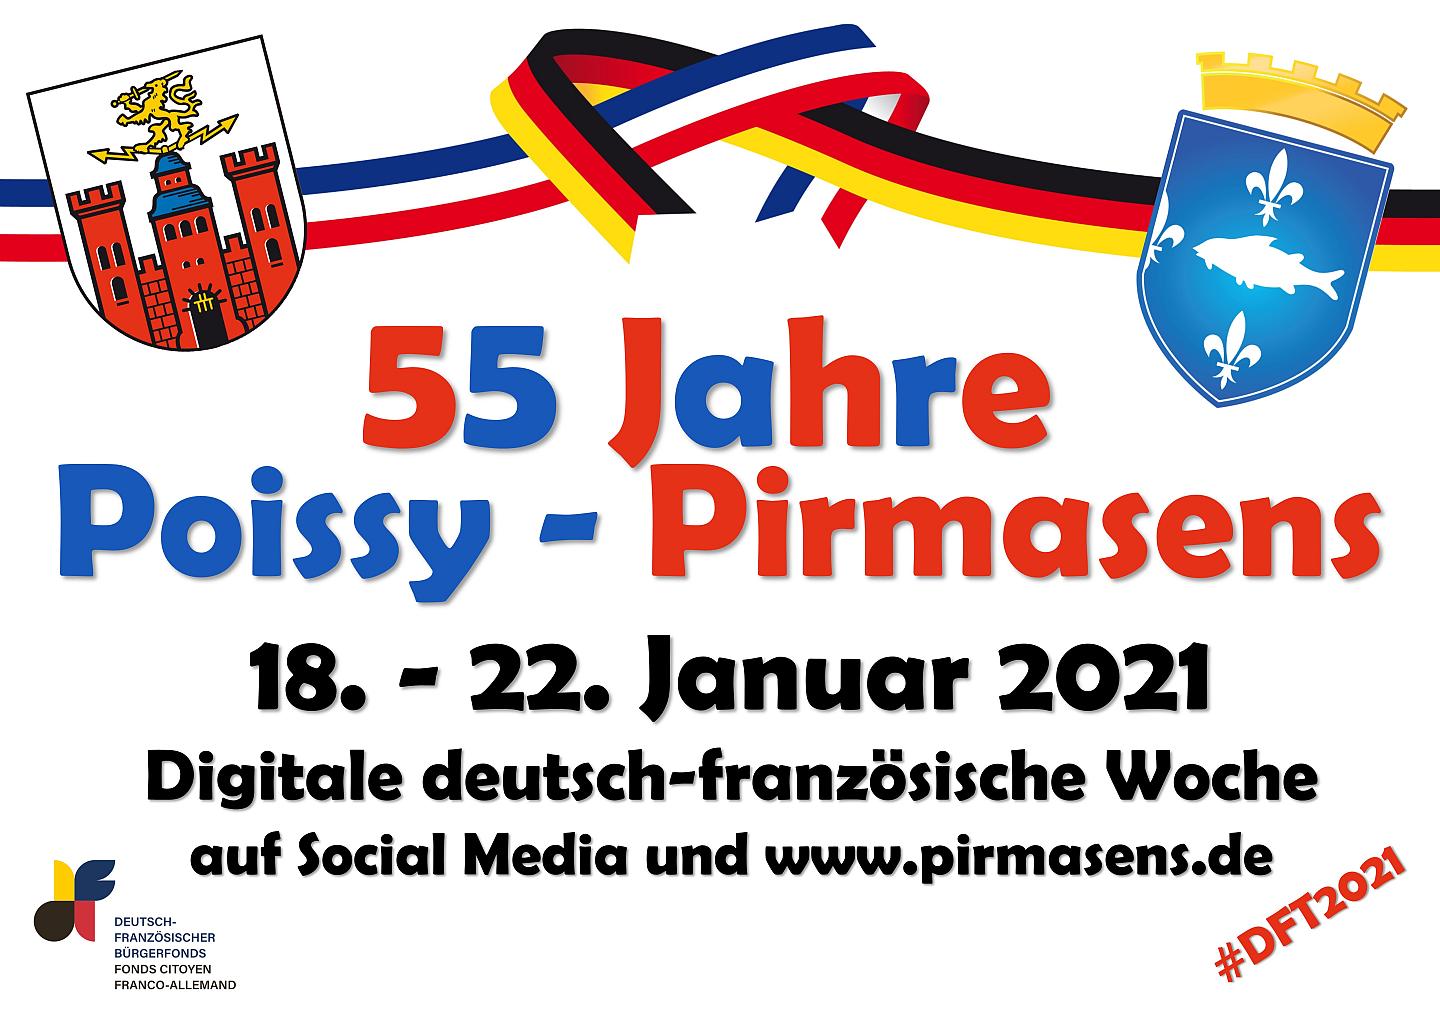 55 Jahre Poissy-Pirmasens | Digitale deutsch-französische Woche